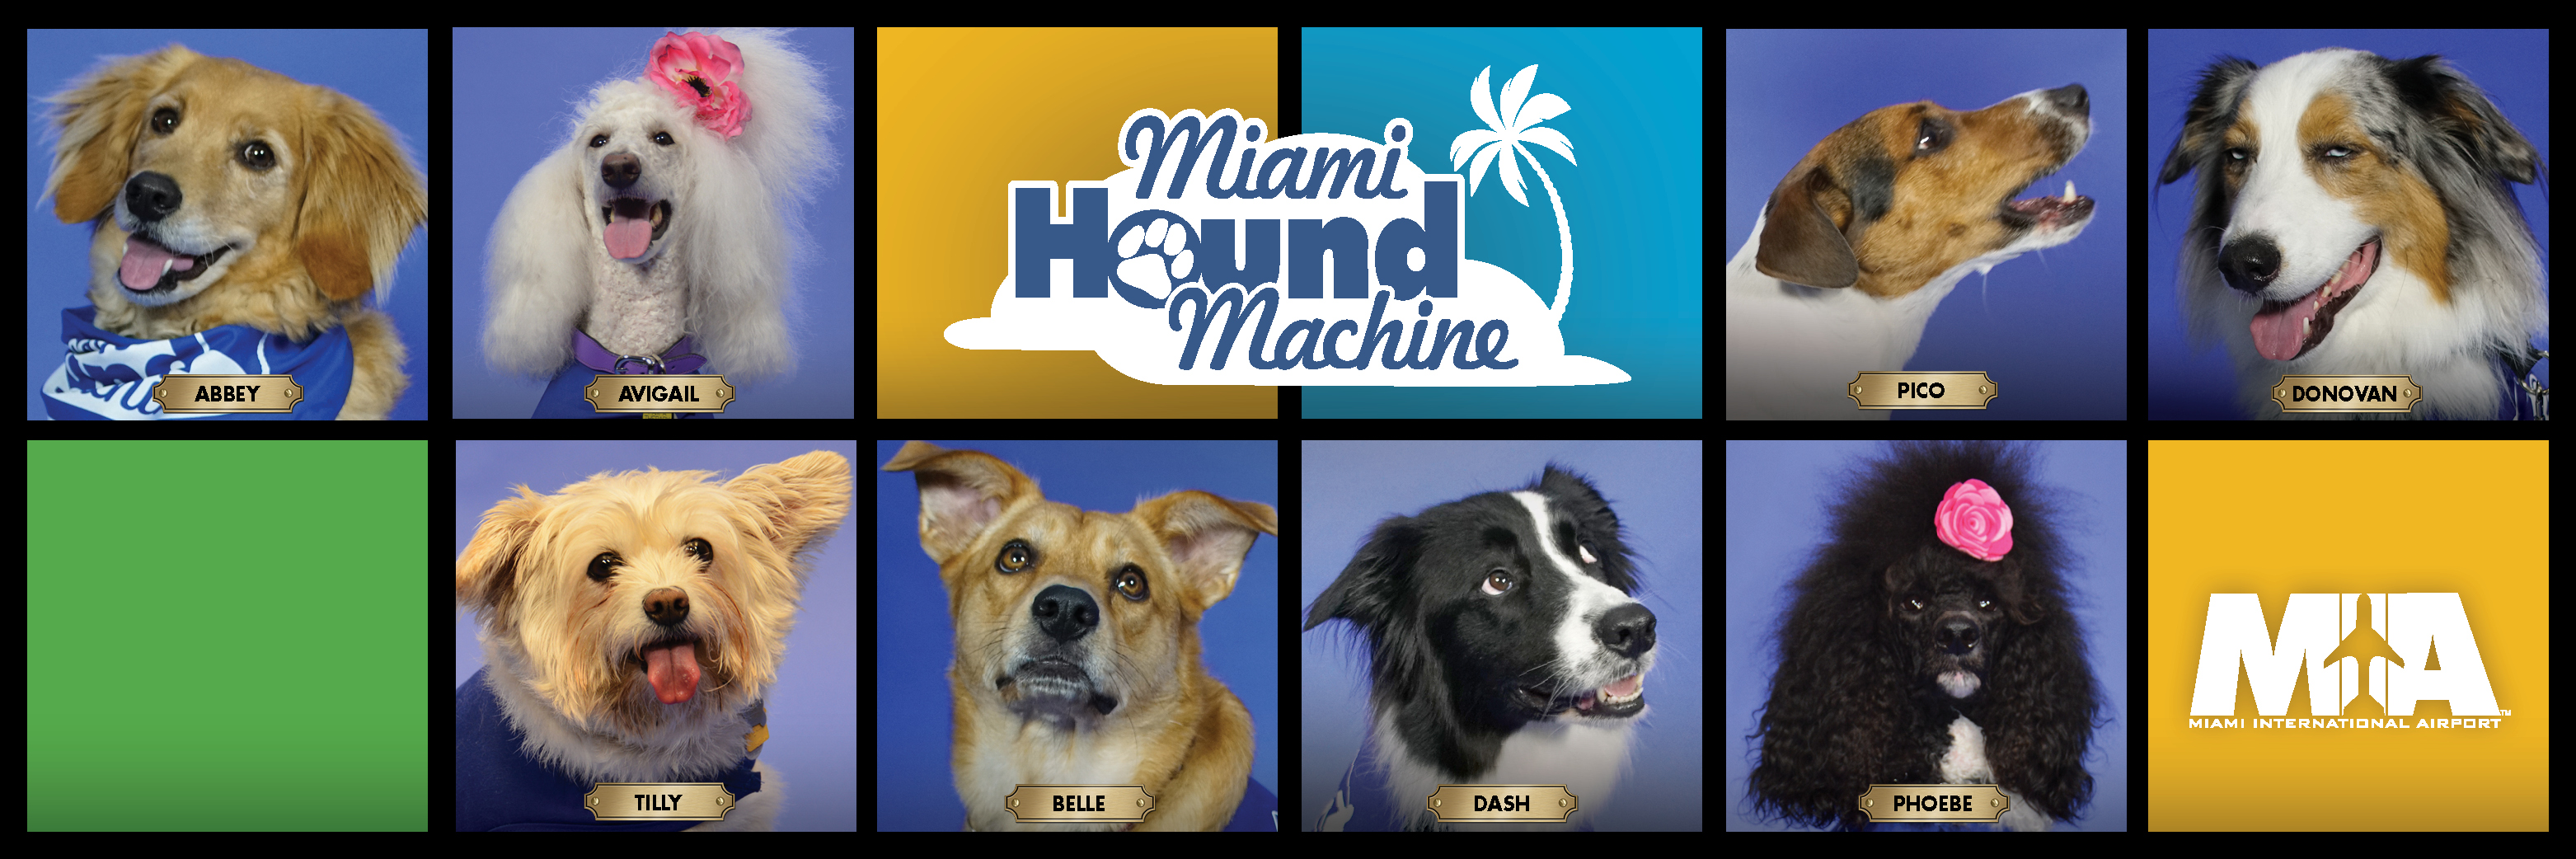 Miami Hound Machine Members Banner